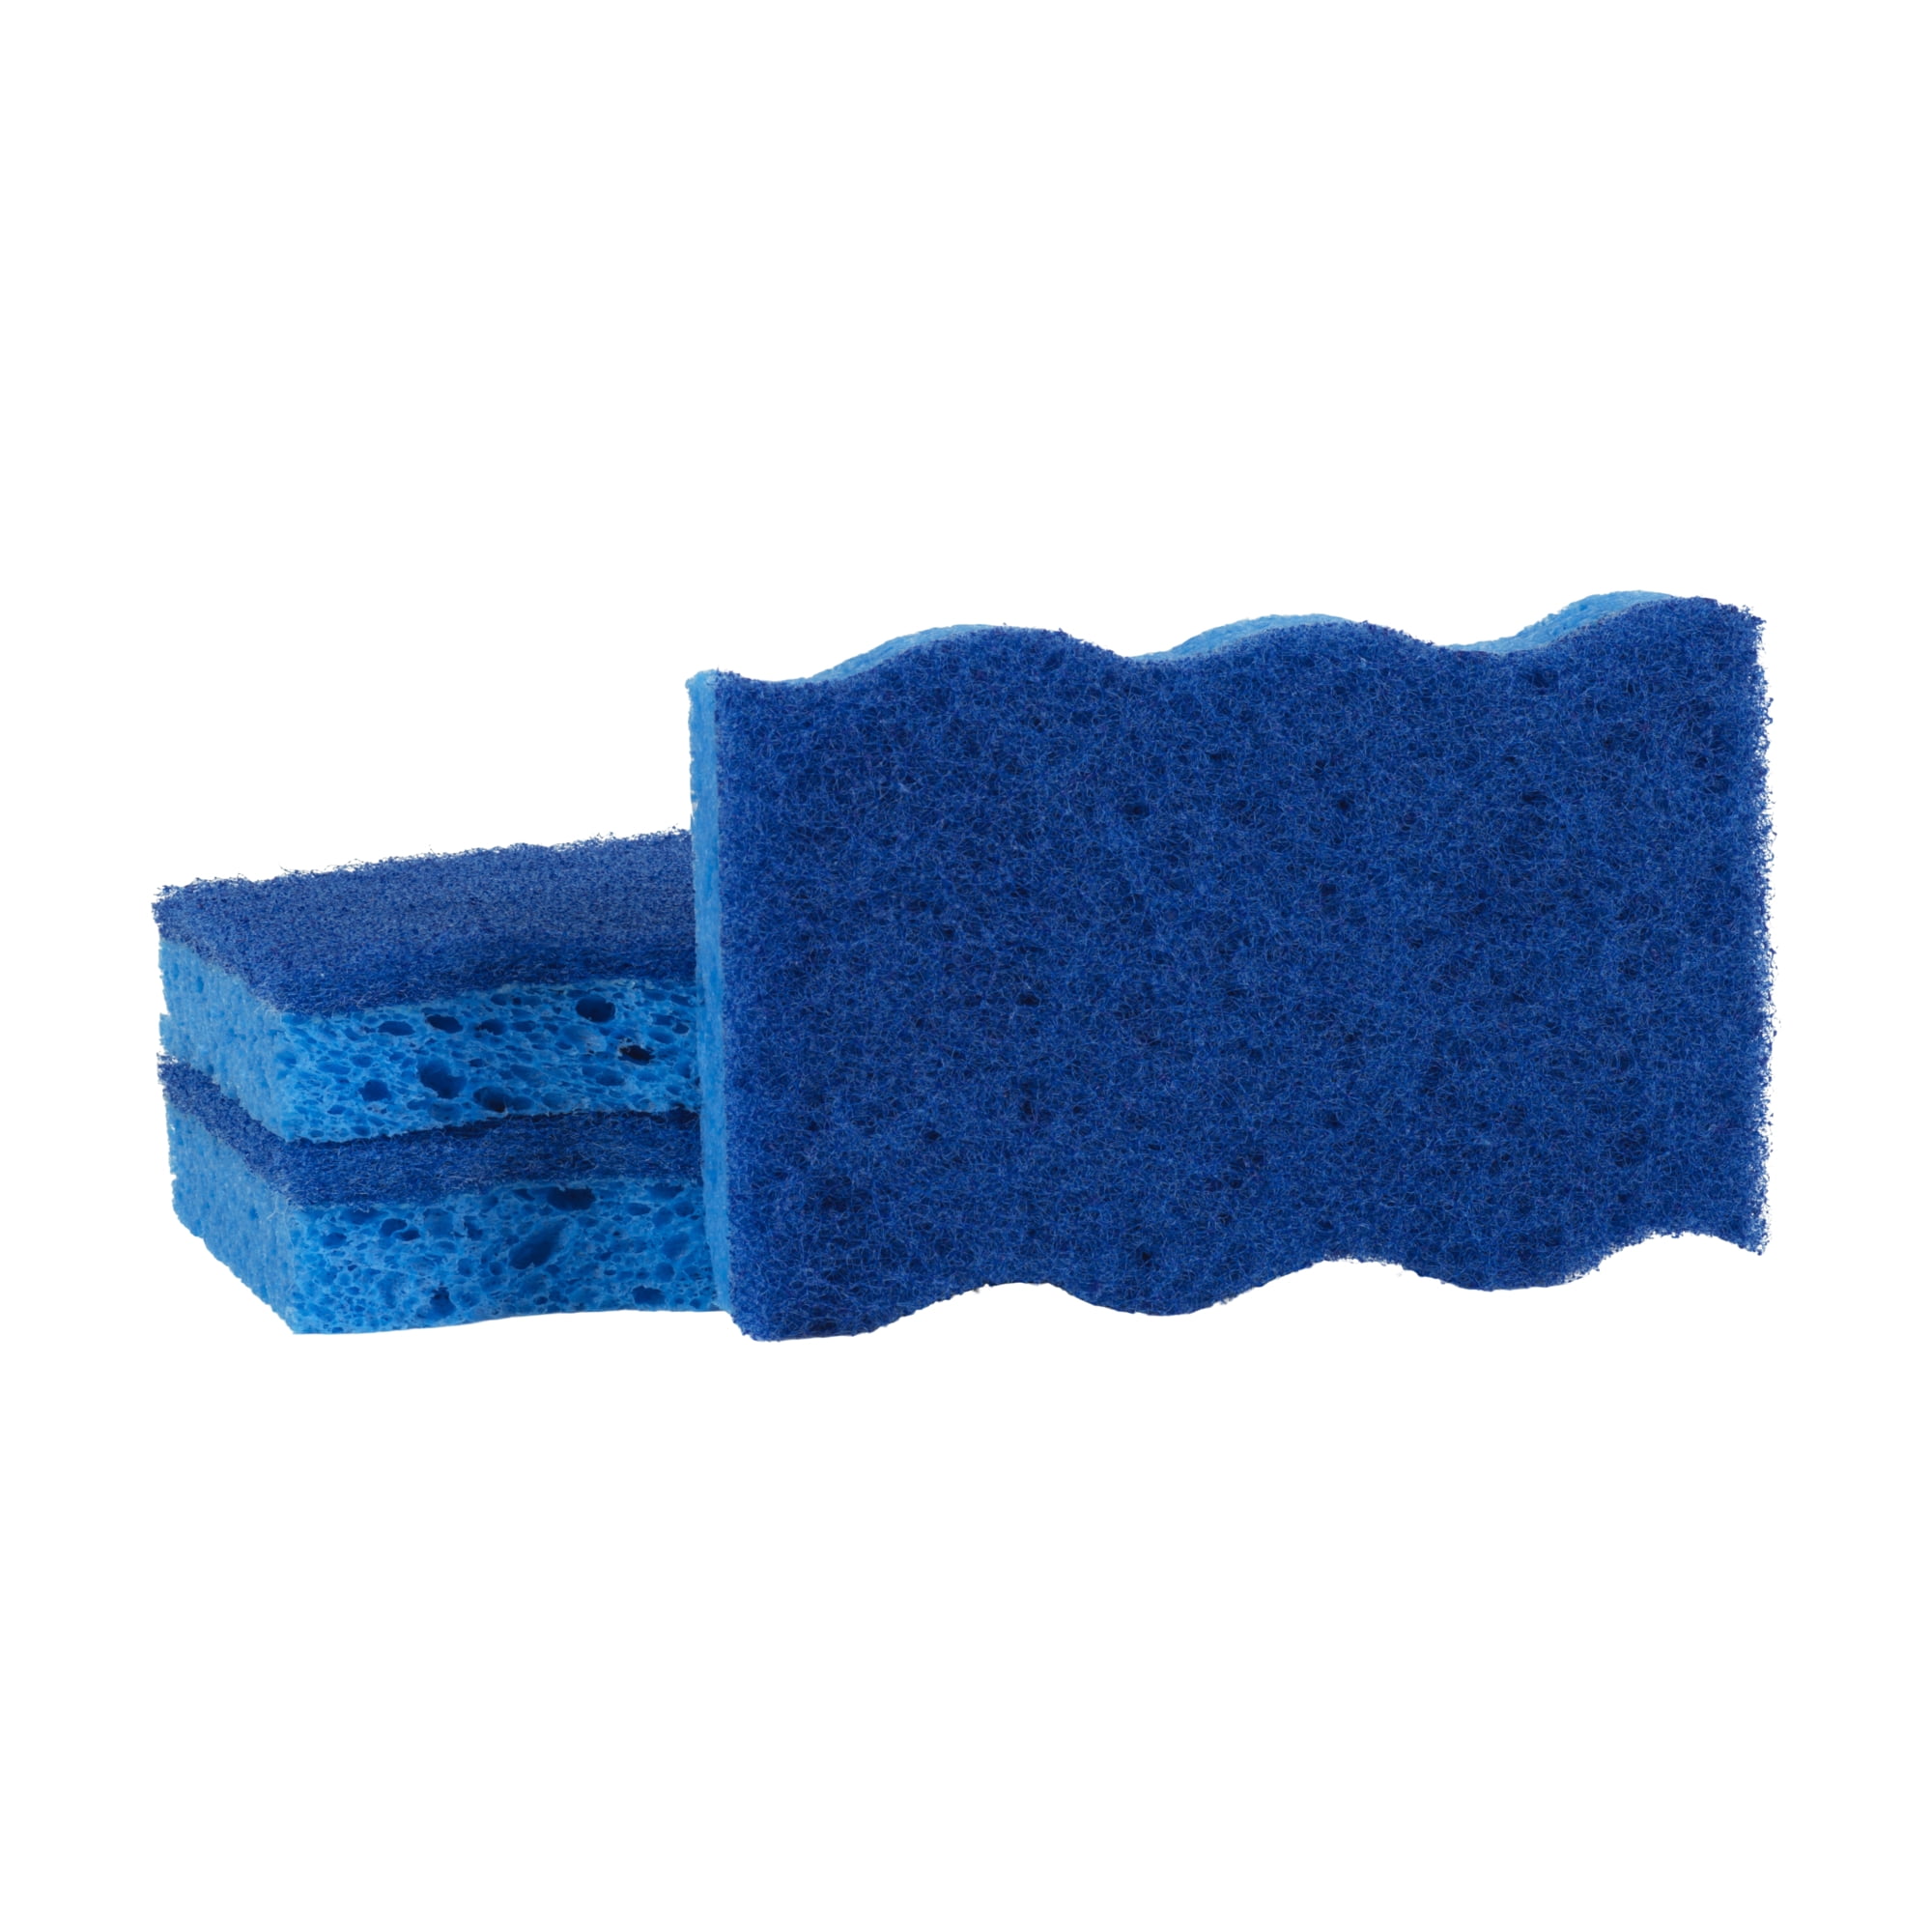  Dawn 233672 Cellulose Sponge Cloth, 2 Piece, Blue